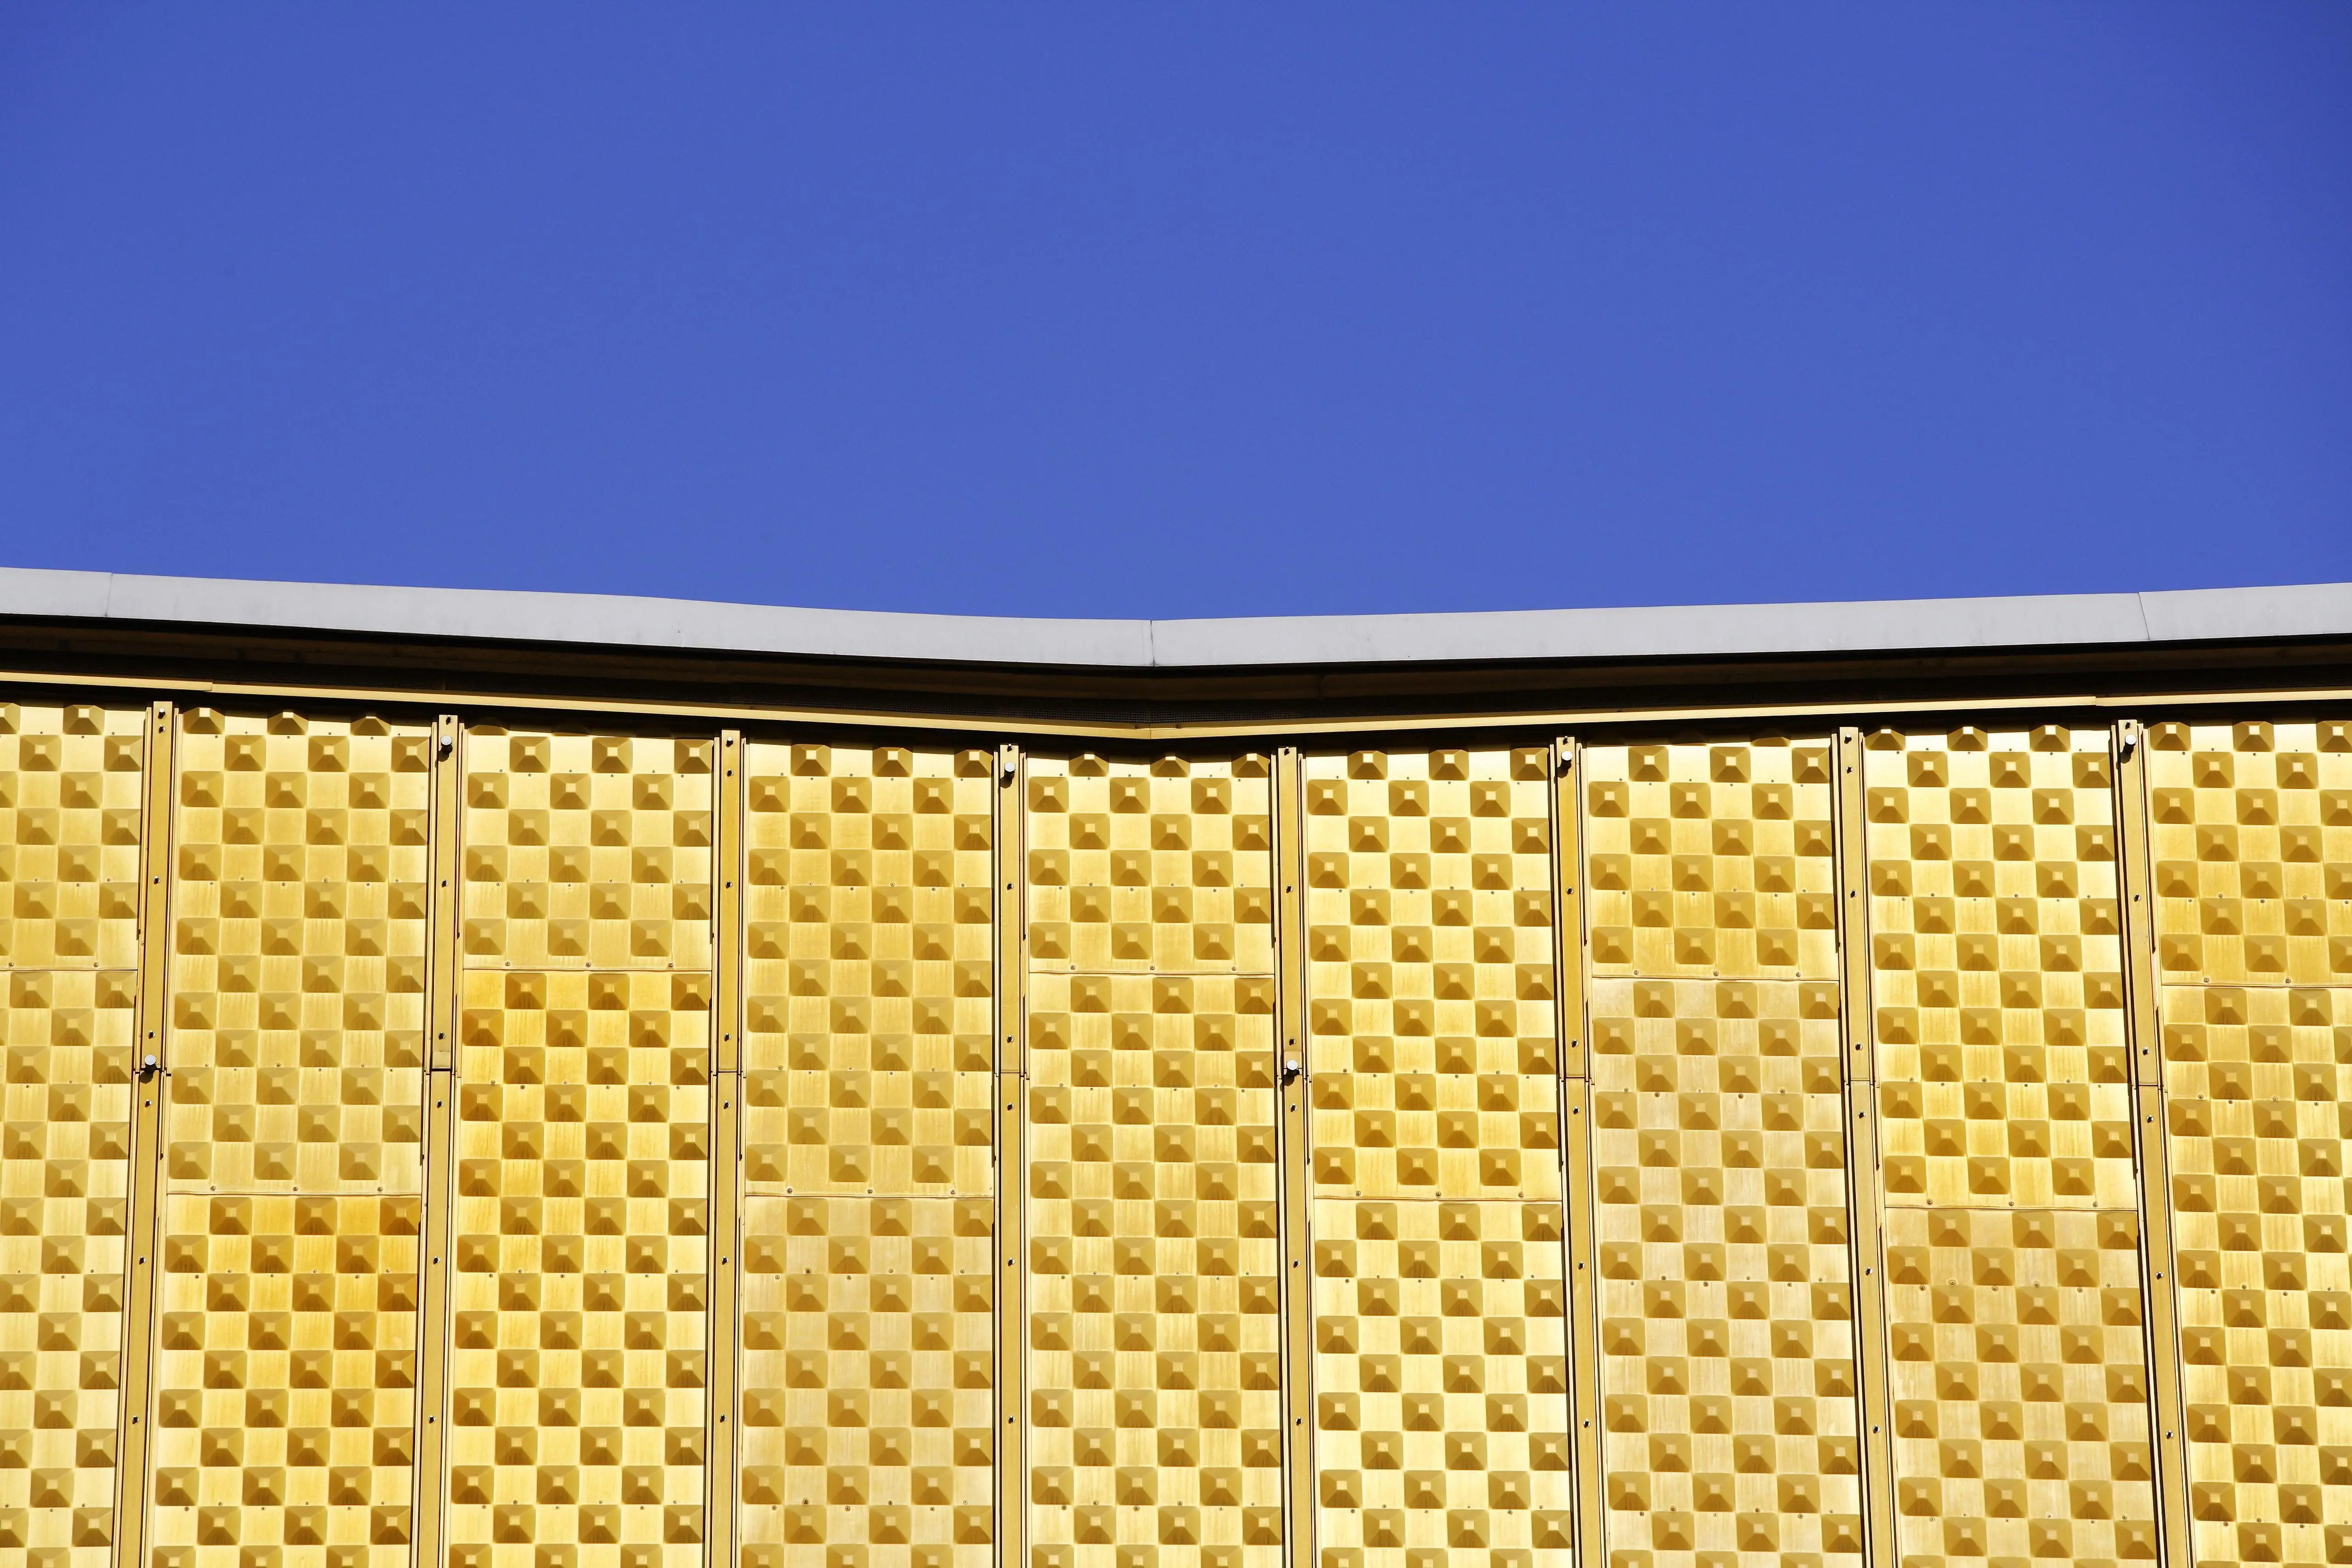 Blauer Himmel über der gelben Fassade der Philharmonie in Berlin